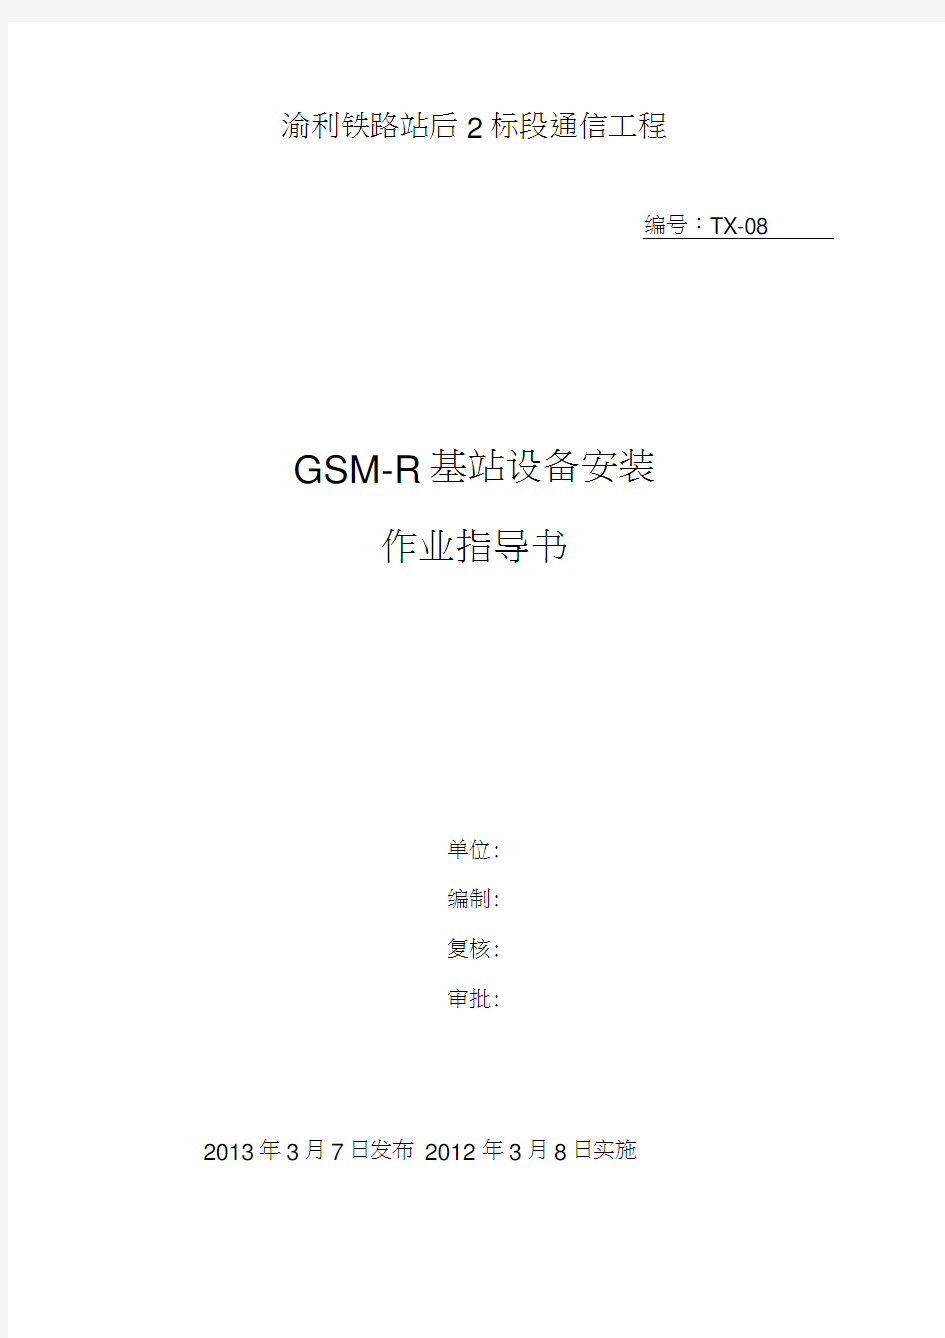 GSM-R基站设备安装作业指导书教程文件